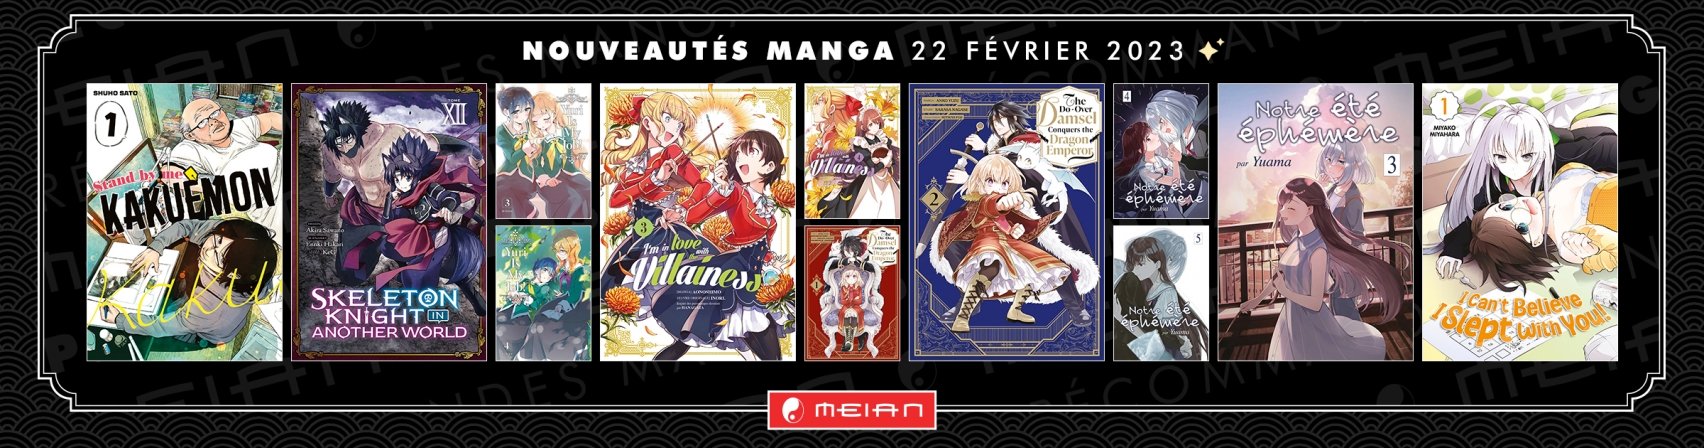 12 nouveaux mangas MEIAN disponibles